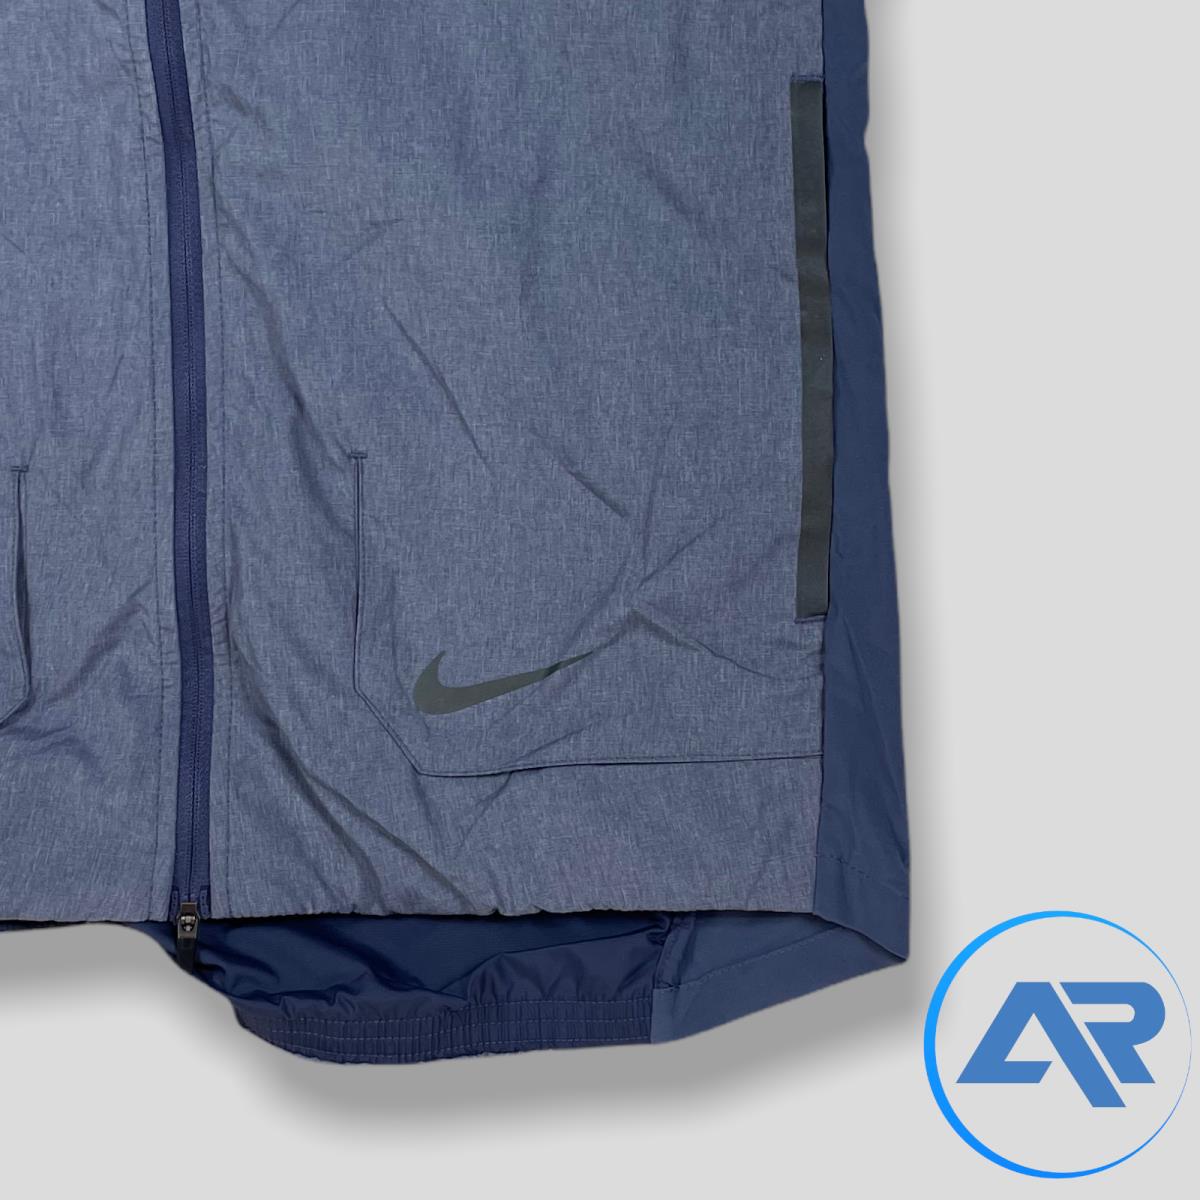 Nike clothing AeroLoft - Indigo Blue 5